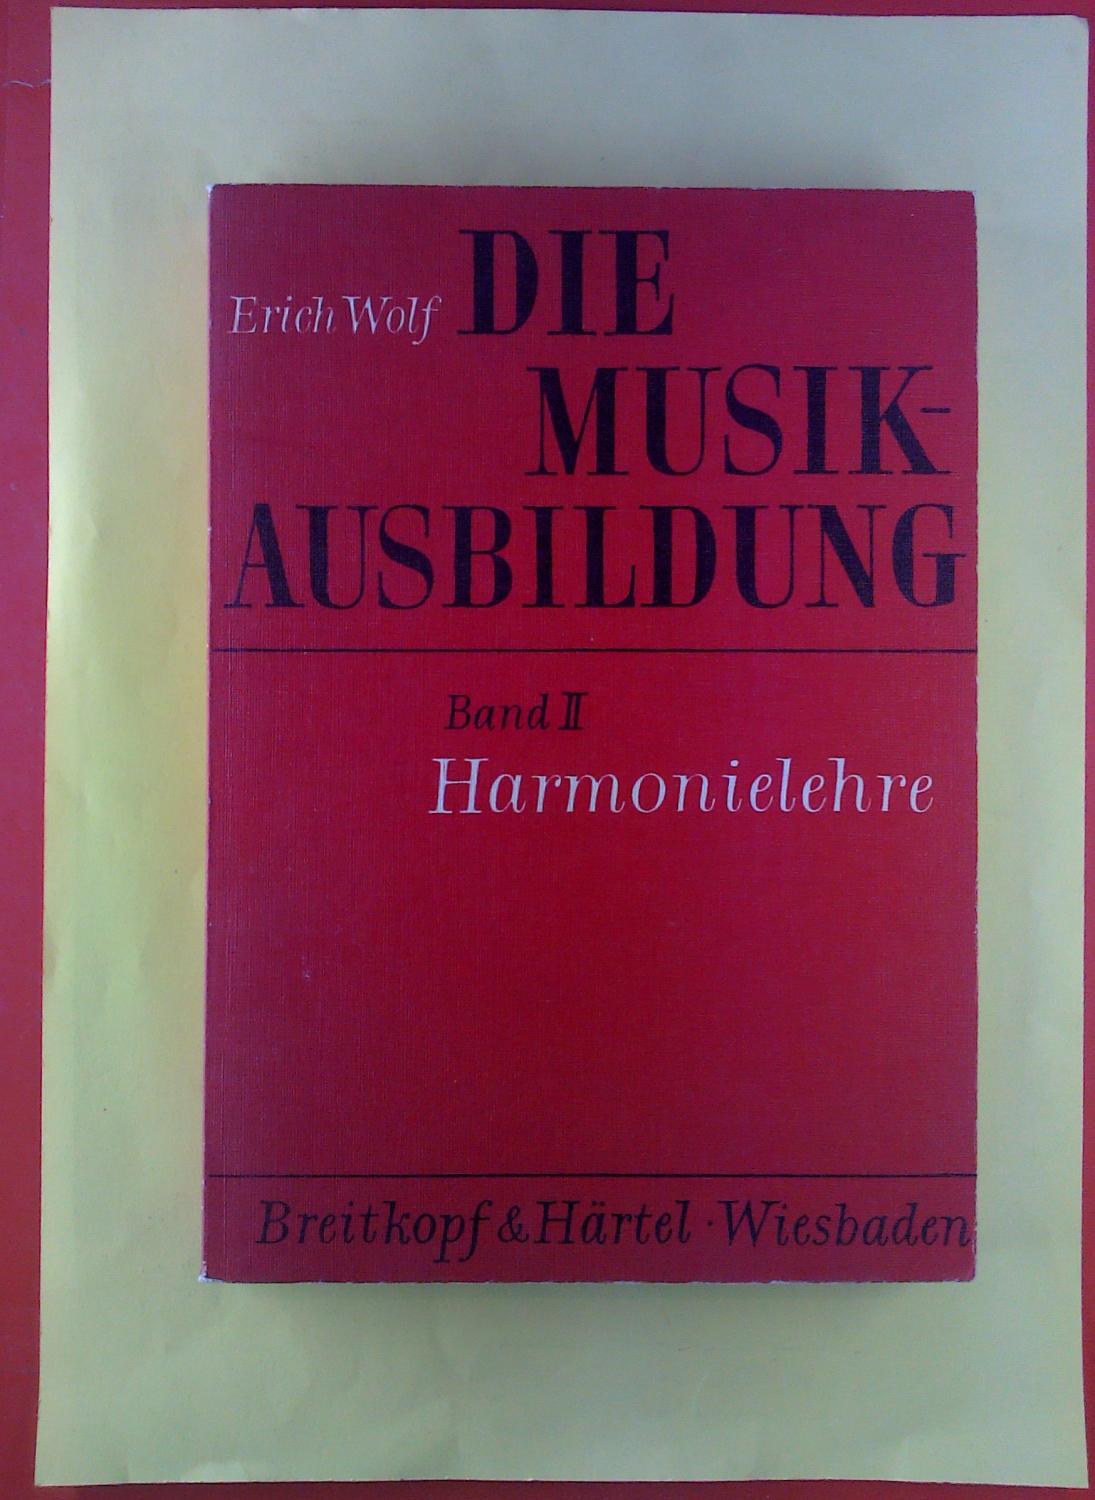 Die Musikausbildung. Band II, Harmonielehre. - Erich Wol